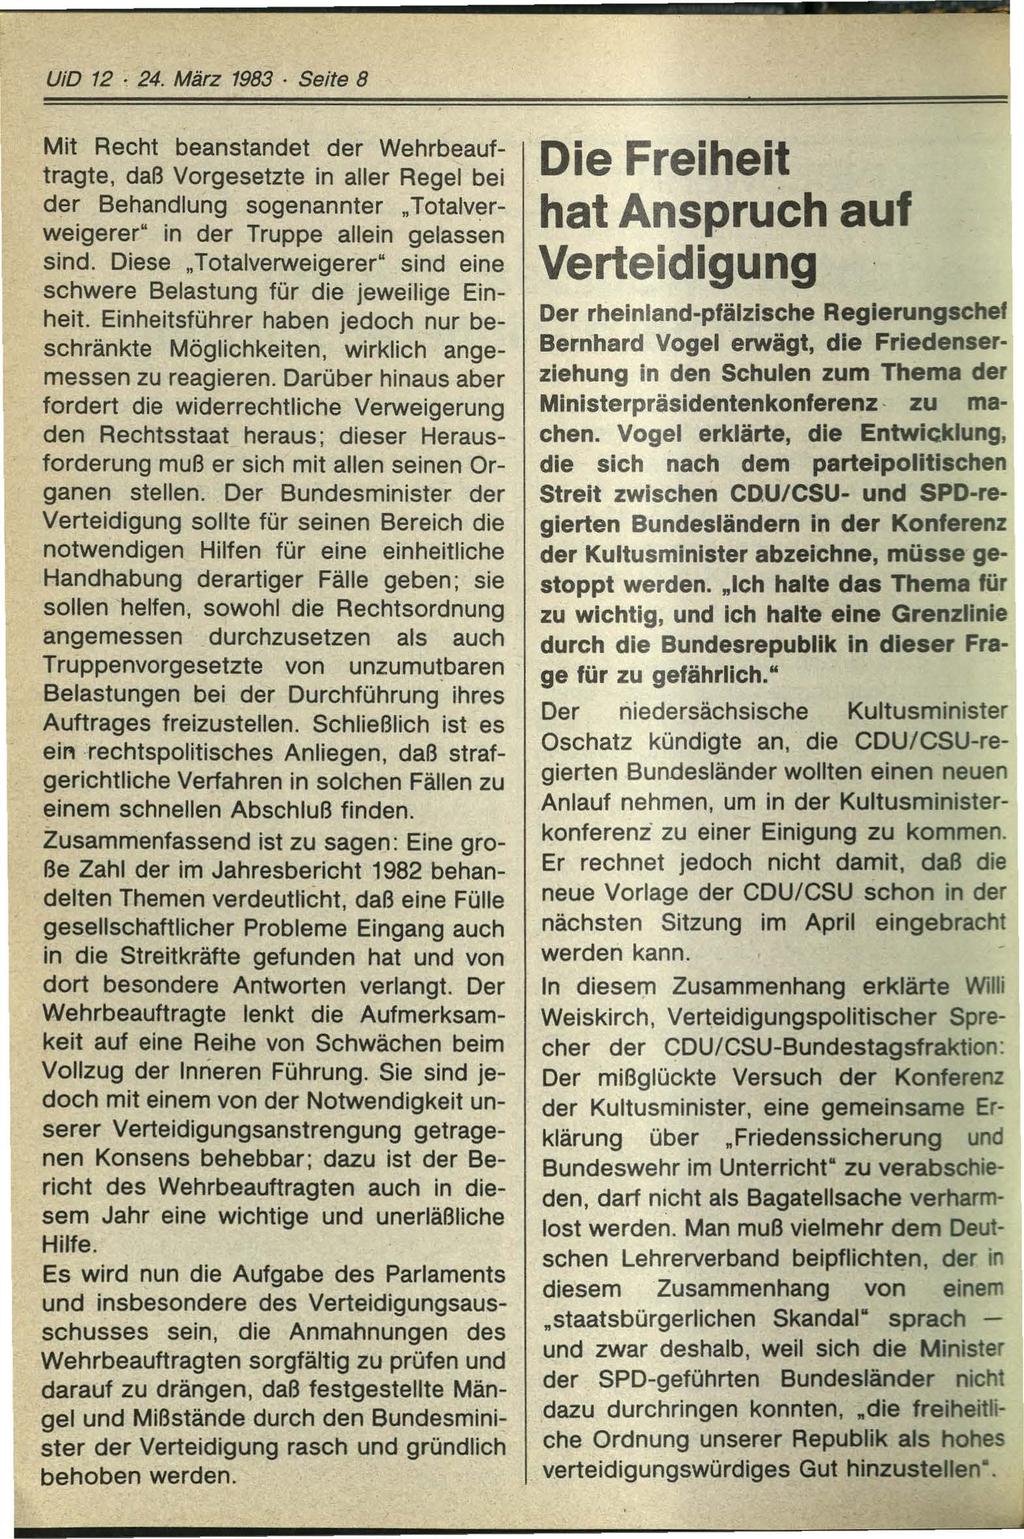 UiD 12 24. März 1983 Seite 8 Mit Recht beanstandet der Wehrbeauftragte, daß Vorgesetzte in aller Regel bei der Behandlung sogenannter Totalverweigerer" in der Truppe allein gelassen sind.